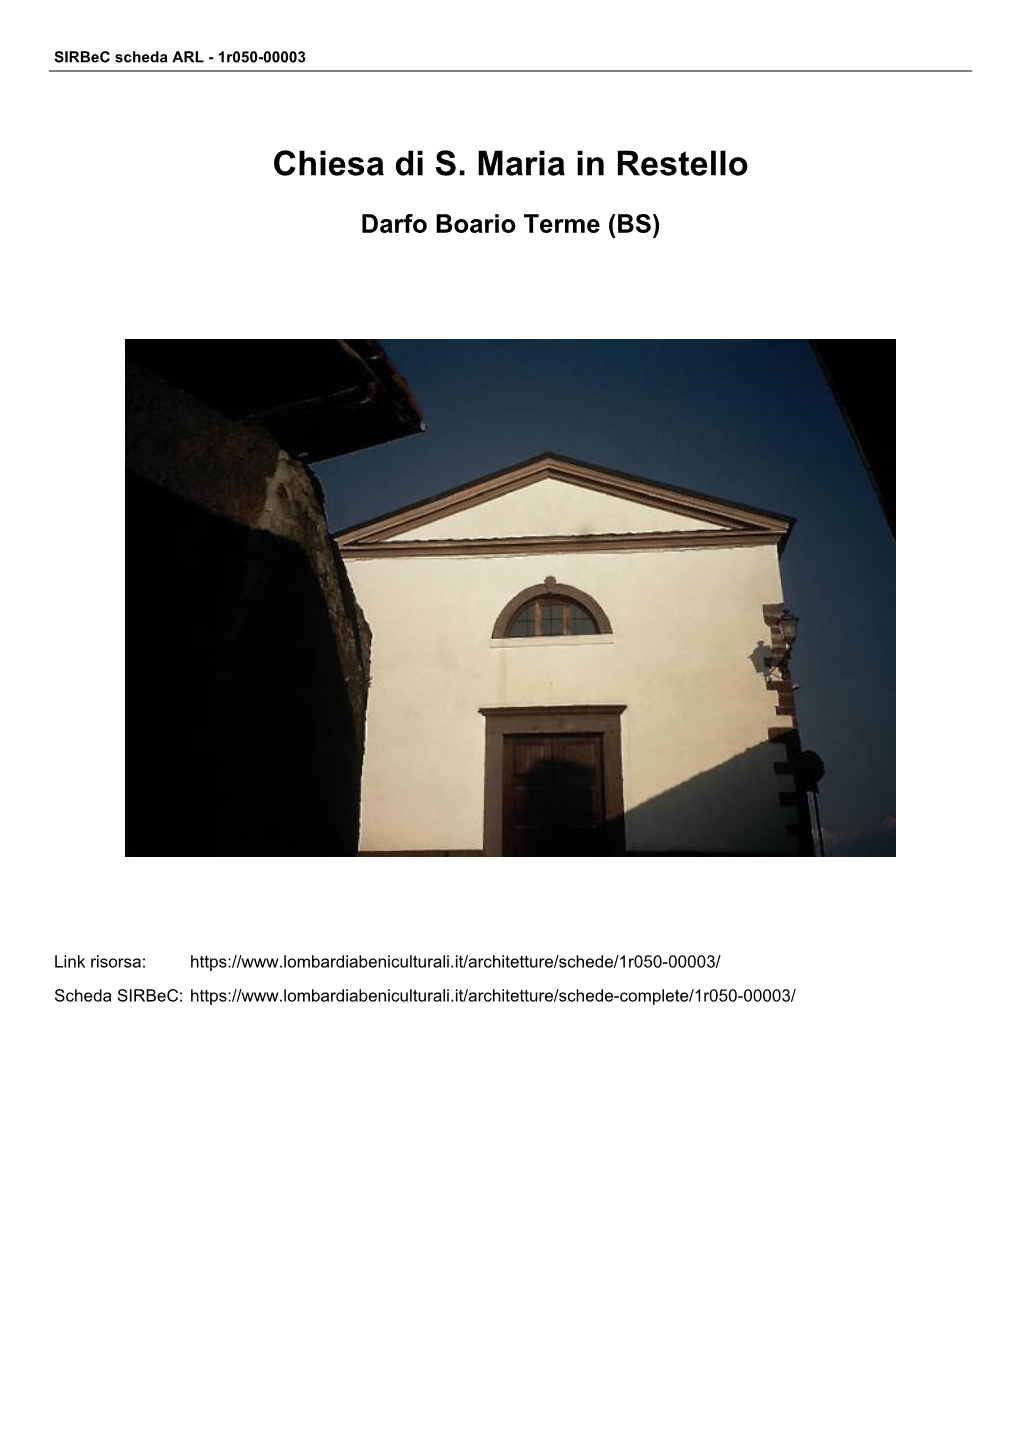 Chiesa Di S. Maria in Restello Darfo Boario Terme